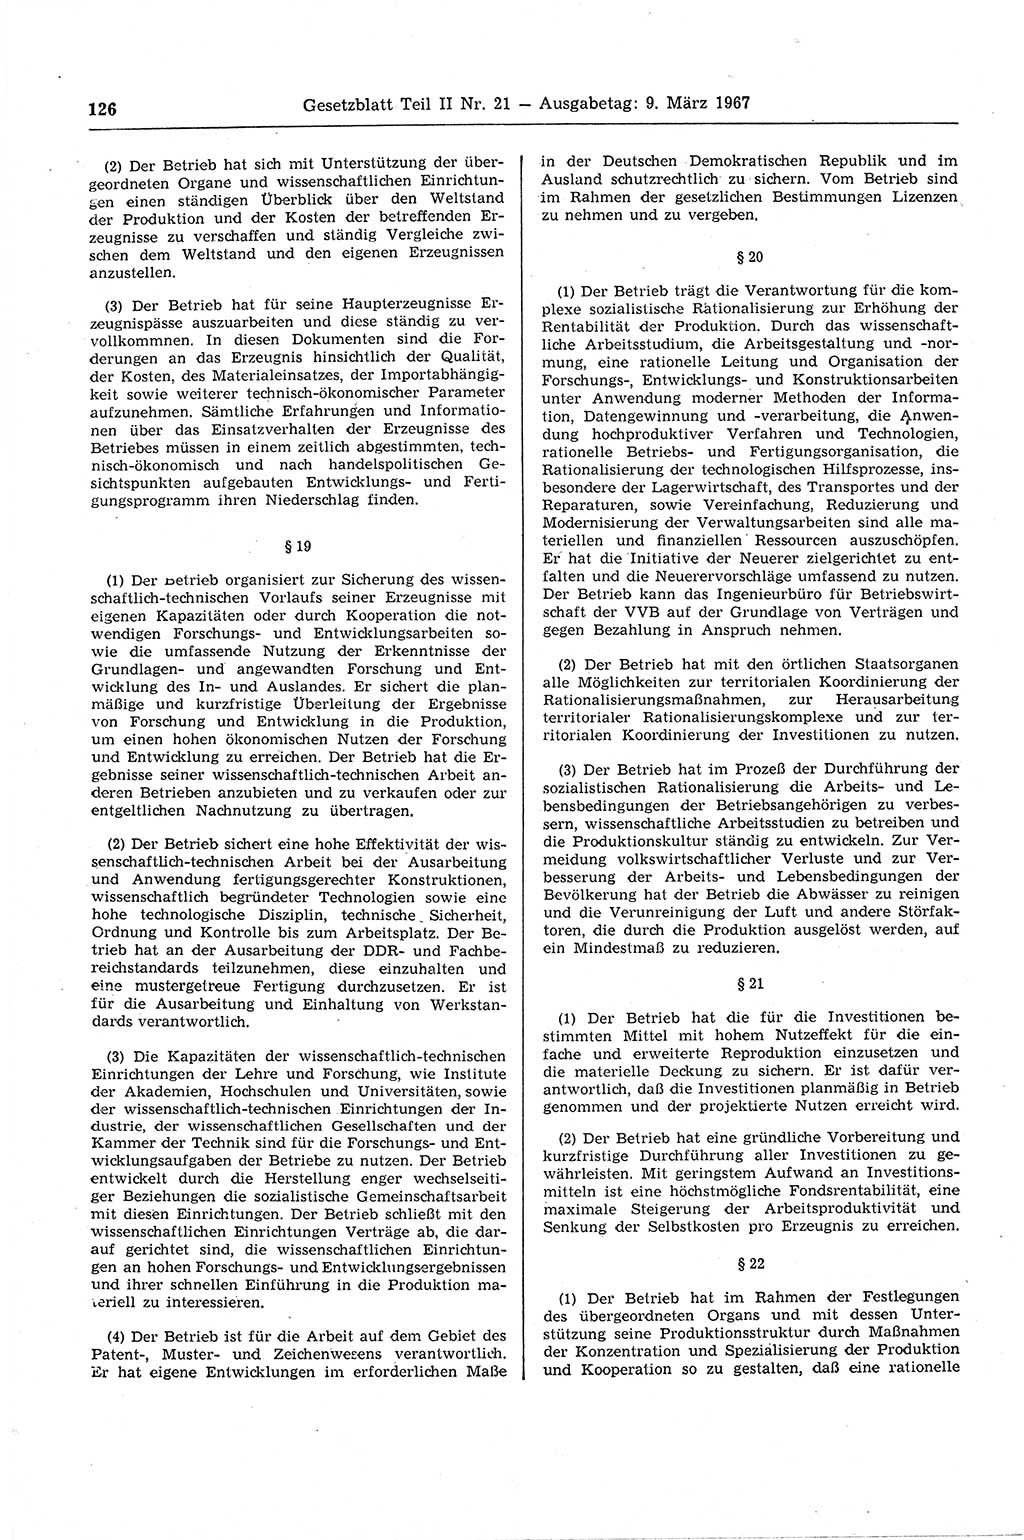 Gesetzblatt (GBl.) der Deutschen Demokratischen Republik (DDR) Teil ⅠⅠ 1967, Seite 126 (GBl. DDR ⅠⅠ 1967, S. 126)